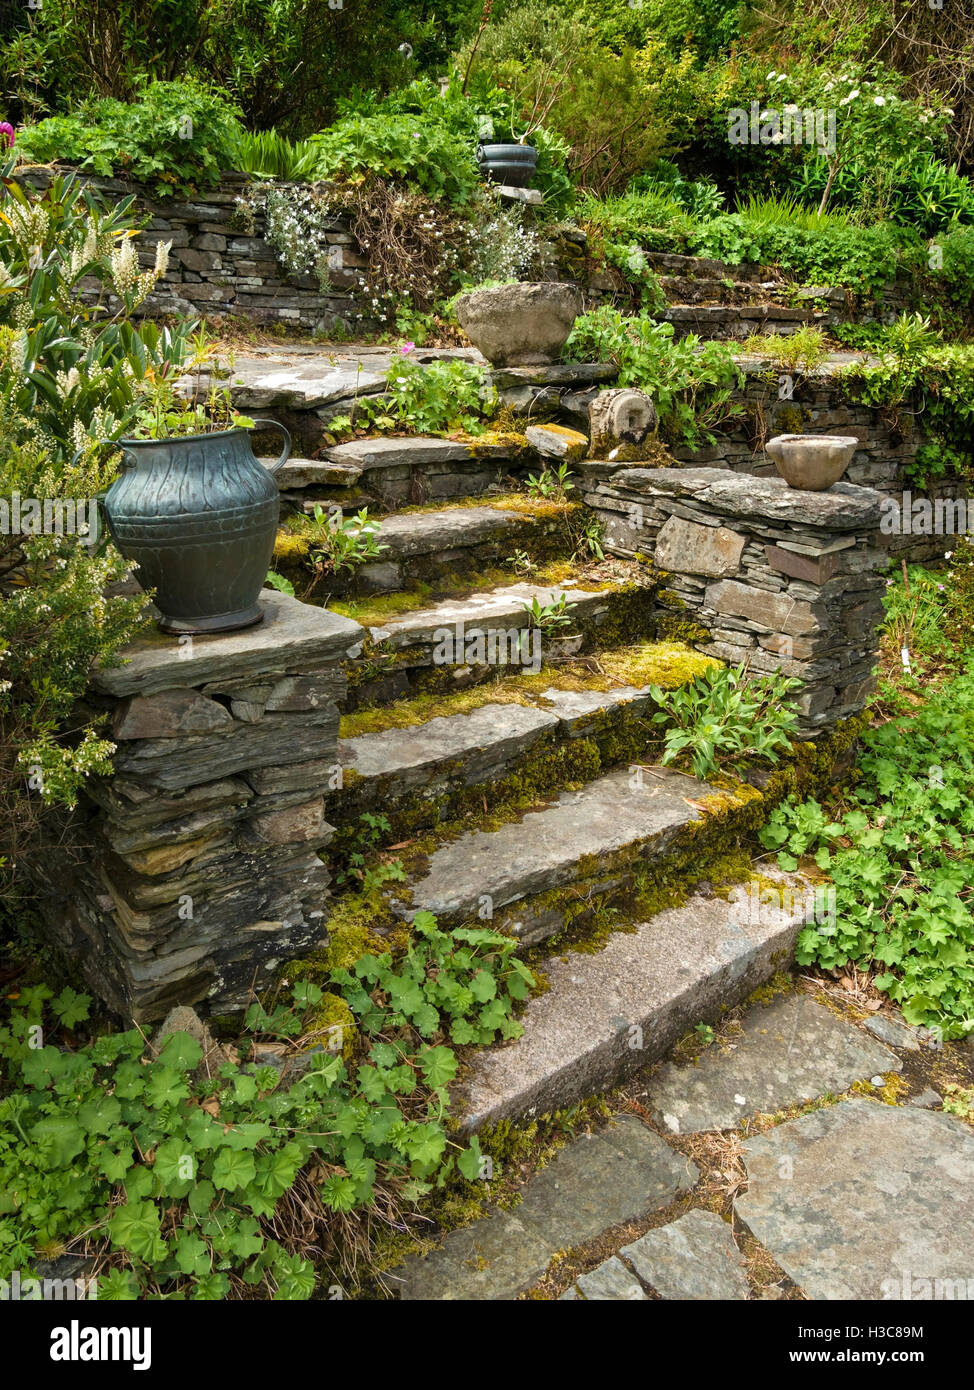 Viejos Cubiertos Escaleras De Piedra Rustica Con Casa Colonsay Urn Jardines Isla De Colonsay Escocia Reino Unido Fotografia De Stock Alamy